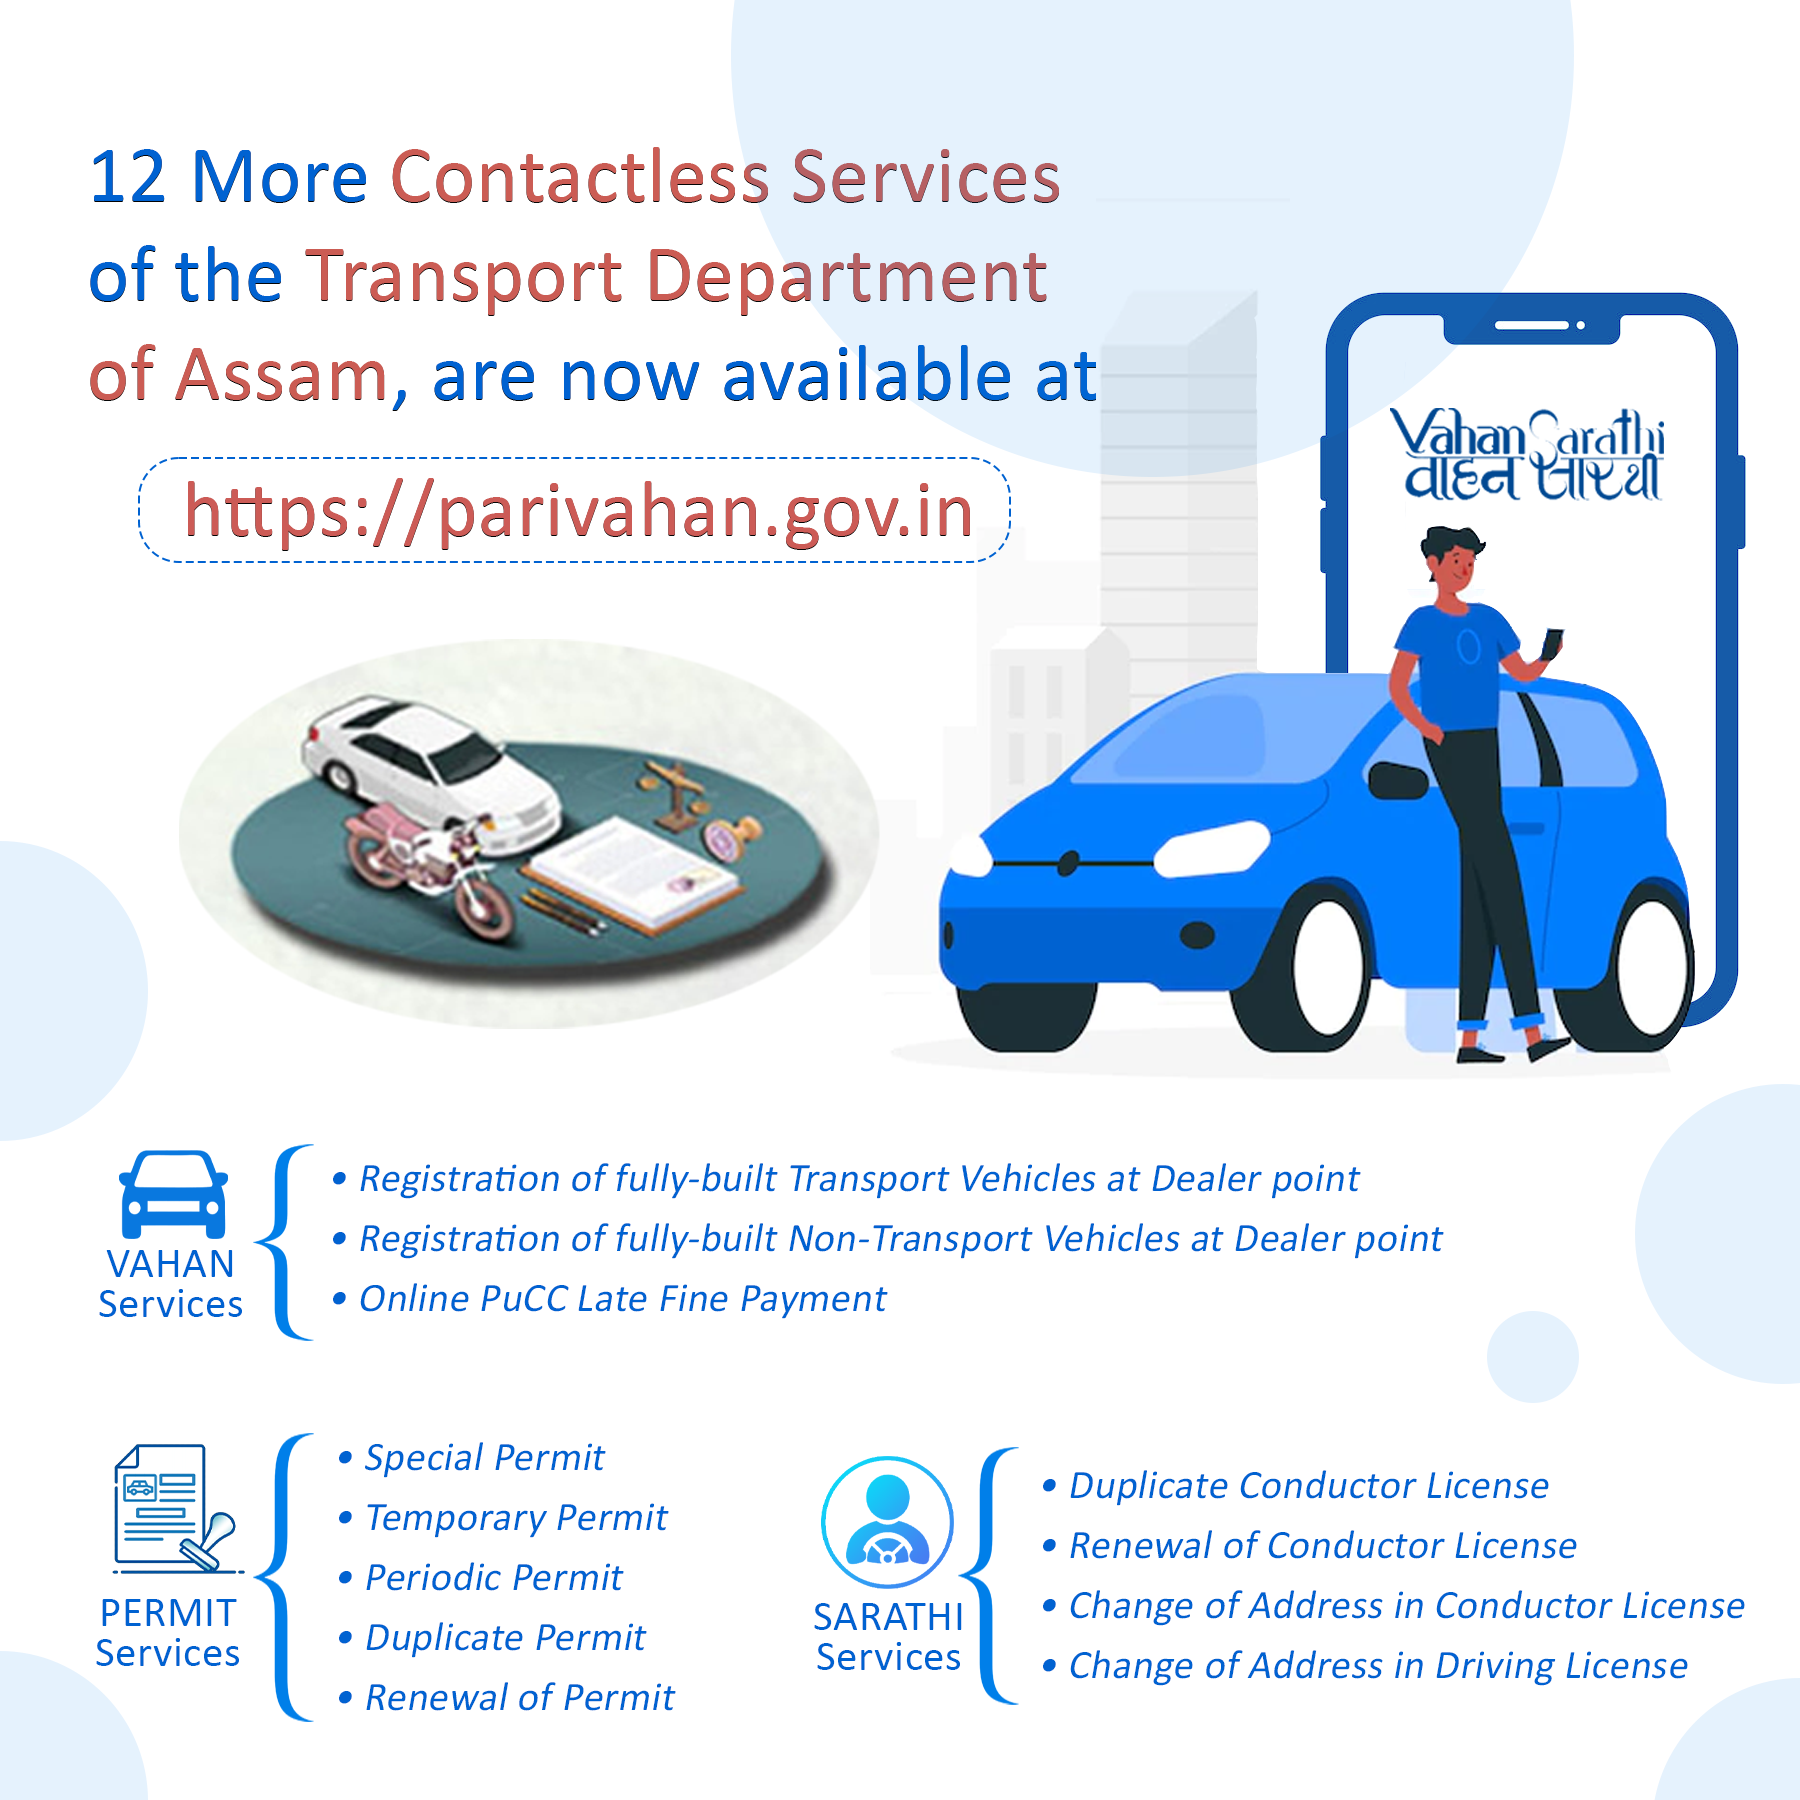 Image of असम राज्य के परिवहन विभाग की 12 ऑनलाइन सेवाओं का शुभारंभ।